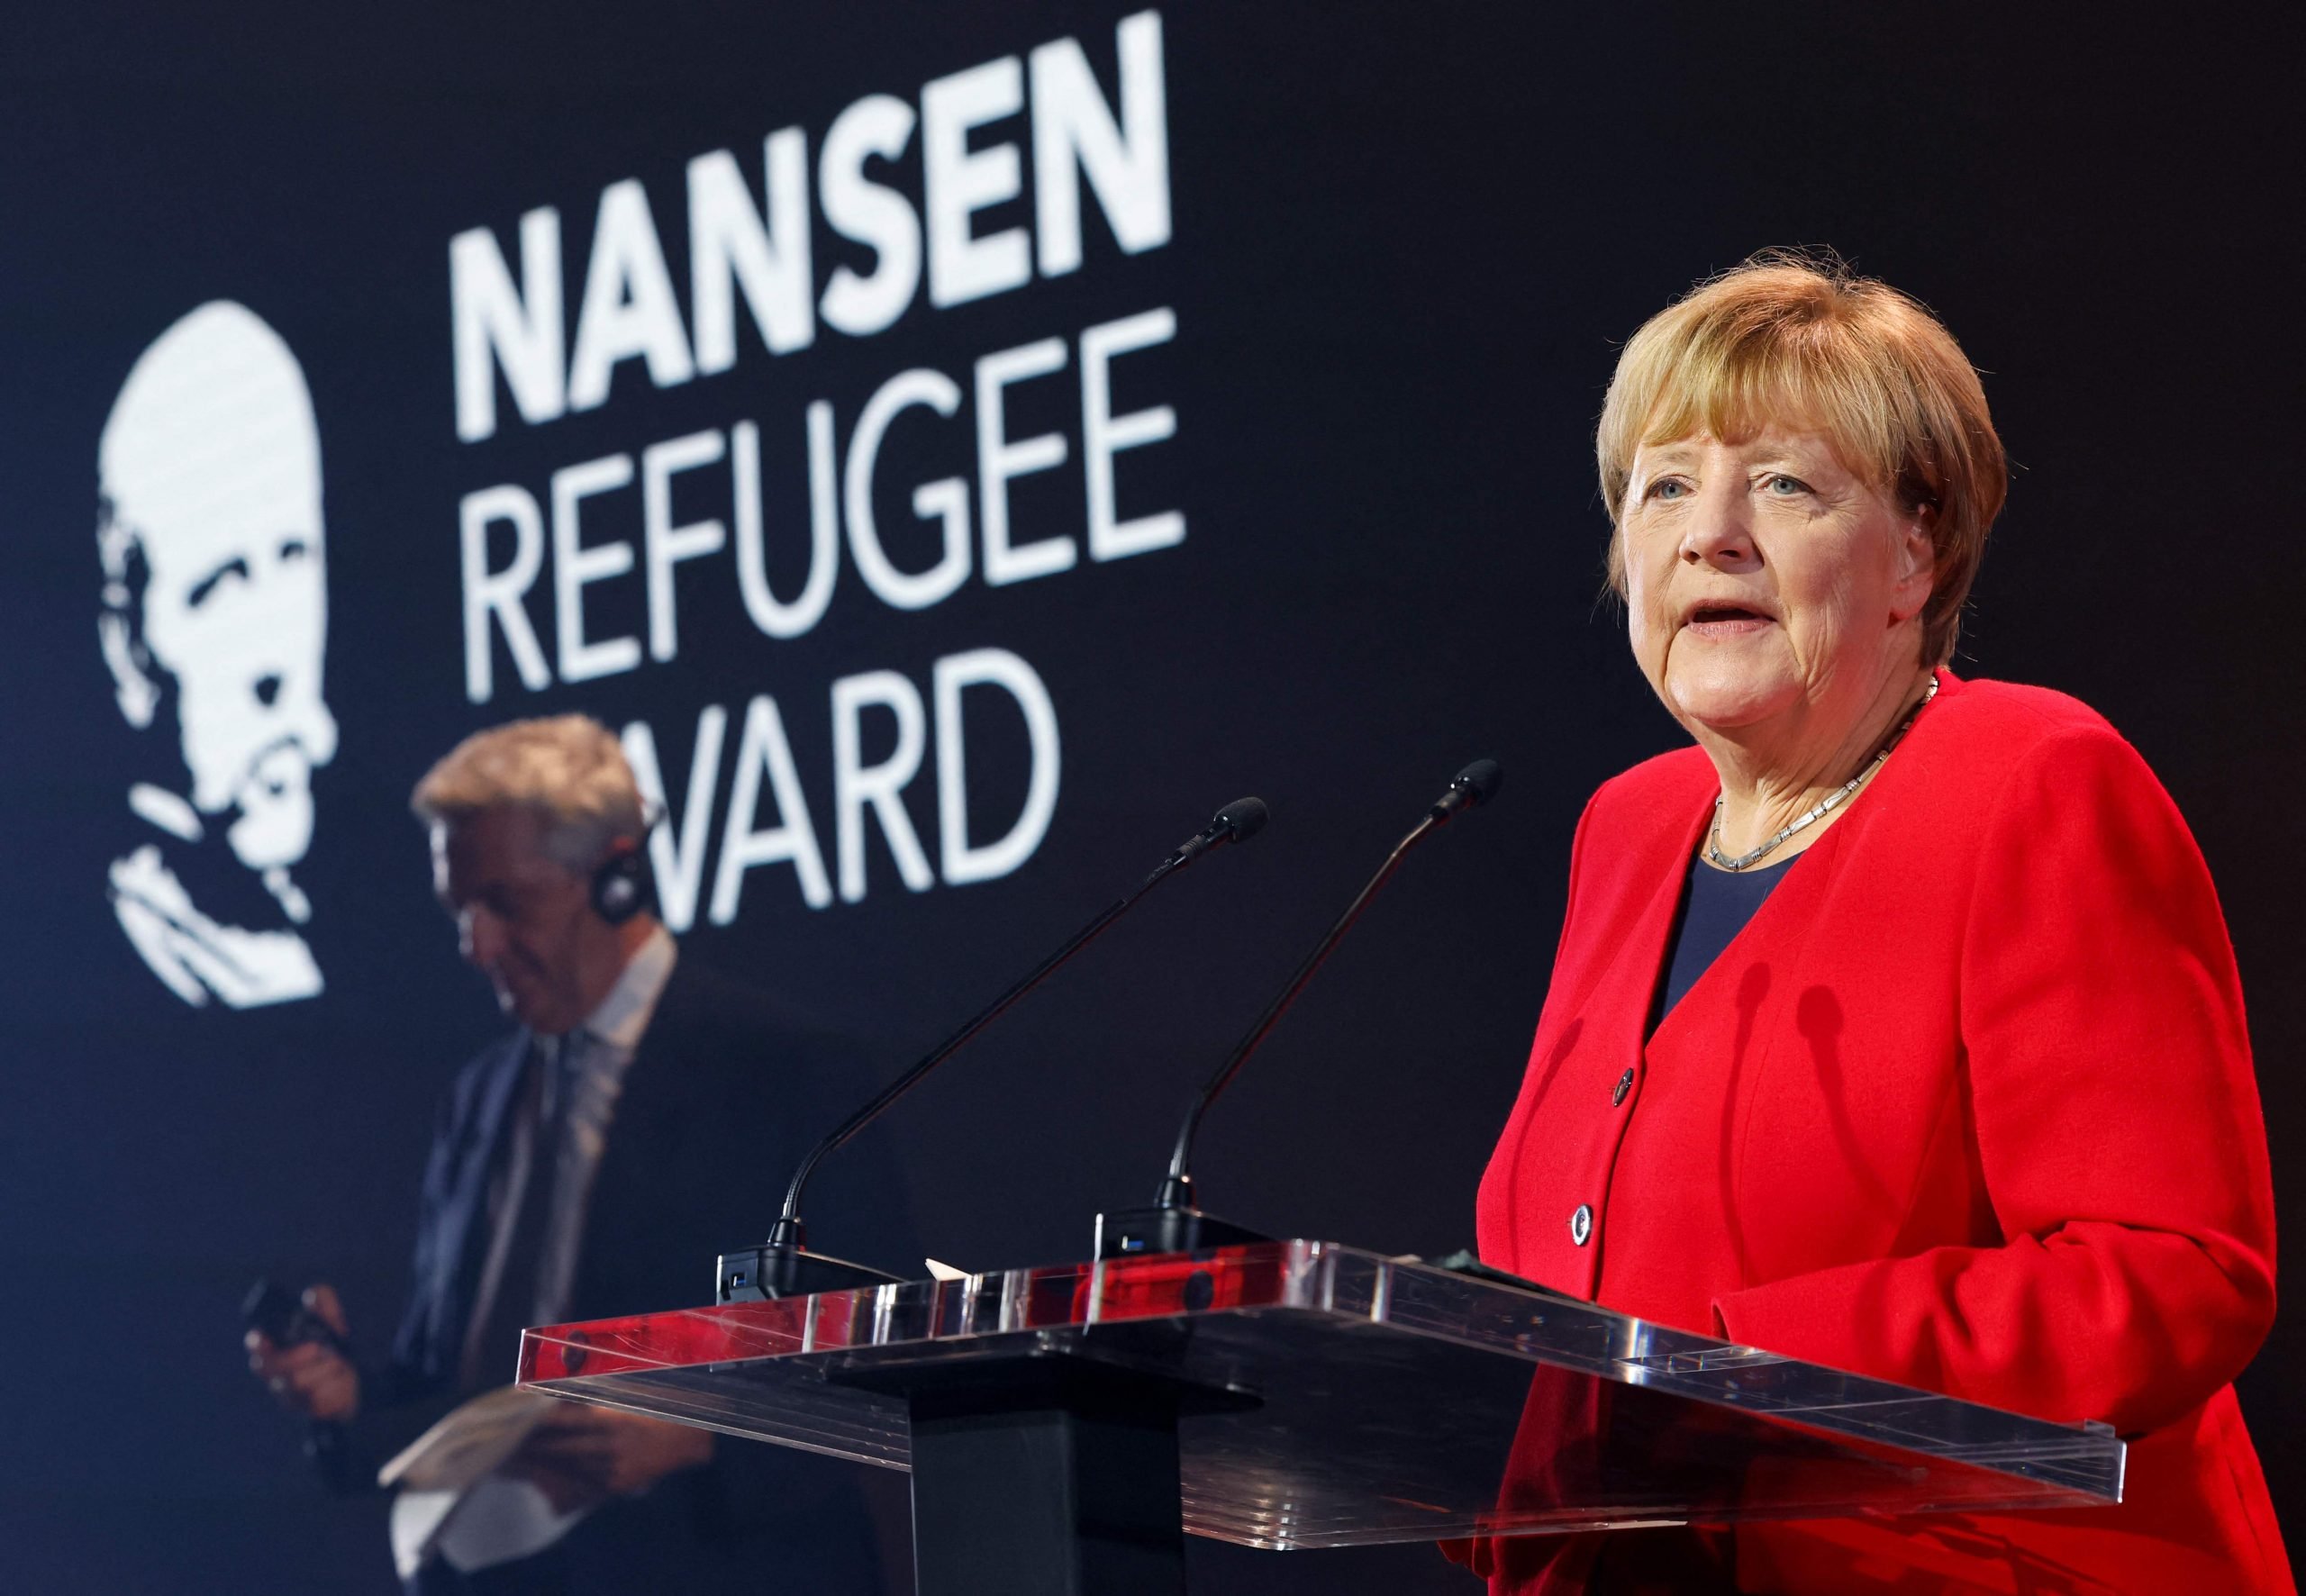 看世界)默克尔获颁联合国兰森难民奖 呼吁各国尊重难民权利 